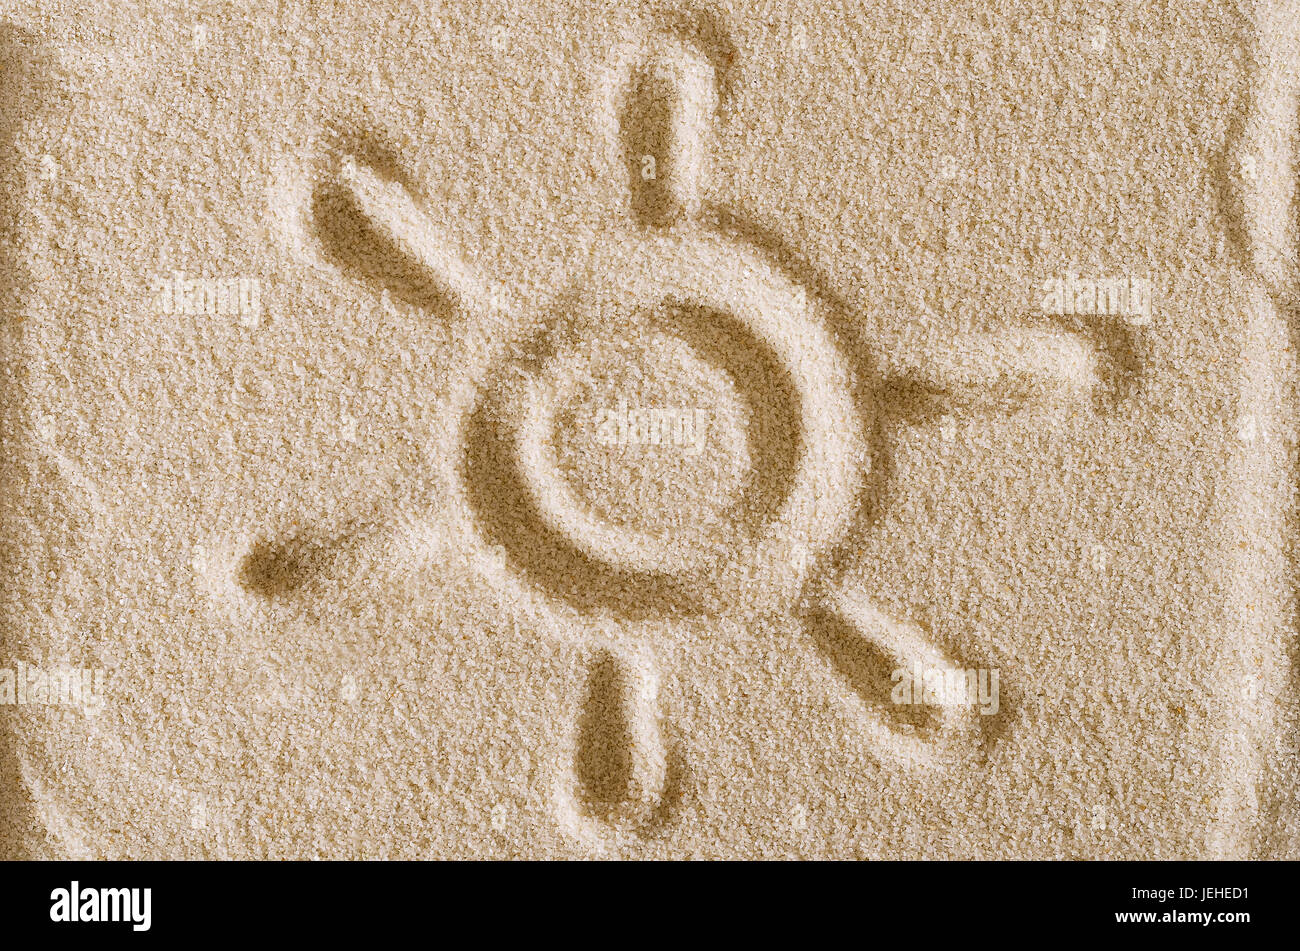 Simbolo del sole tratte in superficie di sabbia. Il simbolo solare è un cerchio con sei raggi. Pittogramma e firmare per elevata luminosità. Foto macro close up dal di sopra. Foto Stock